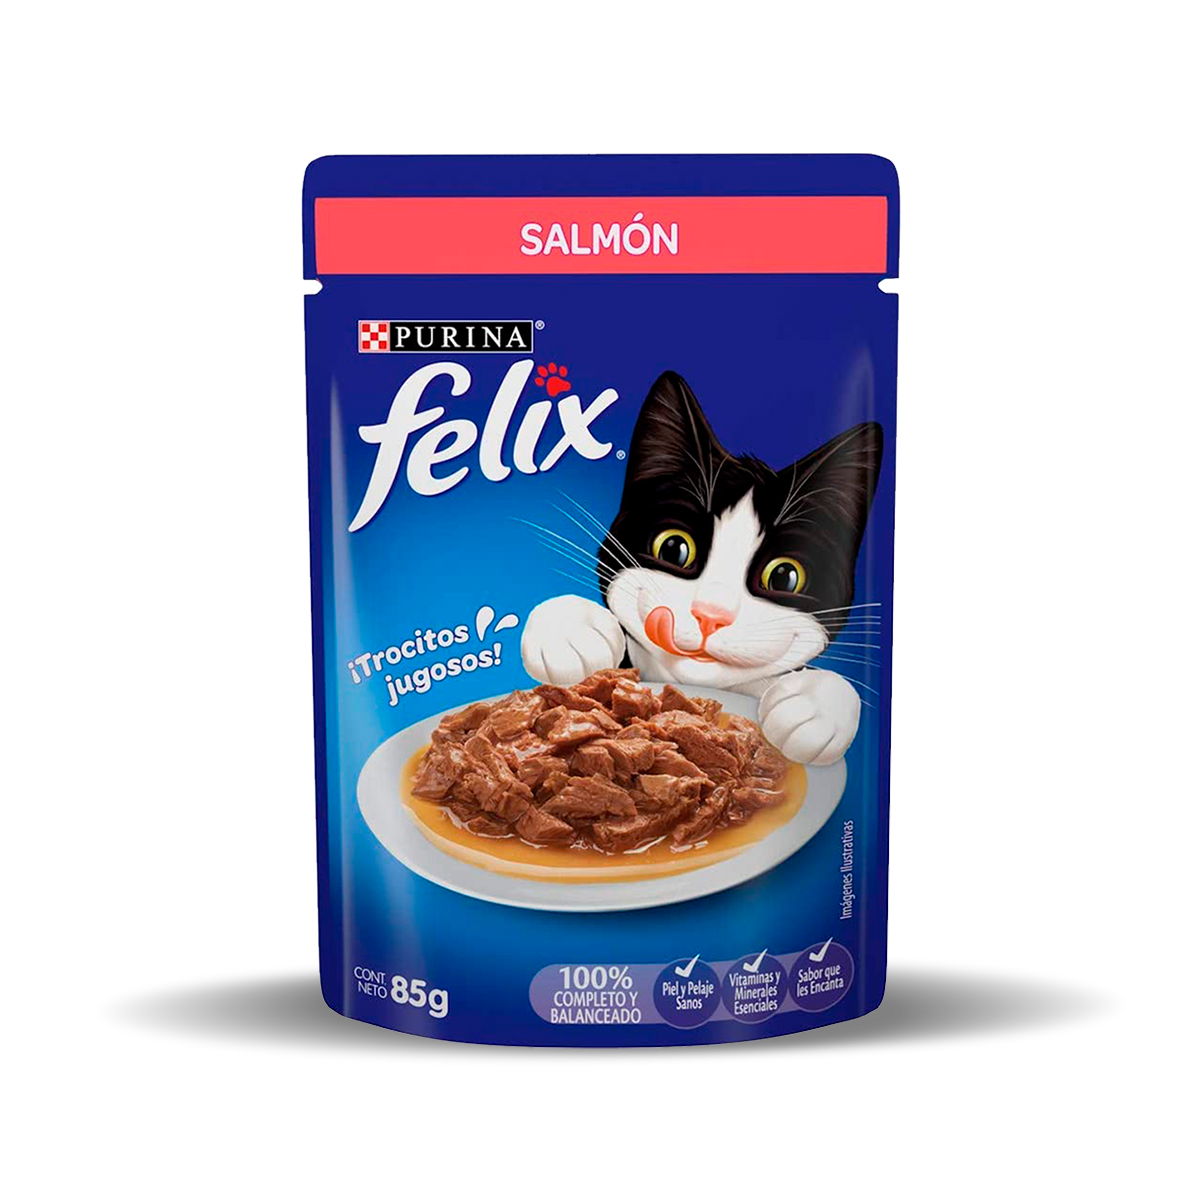 purina-felix-salmon-gatos-1.png